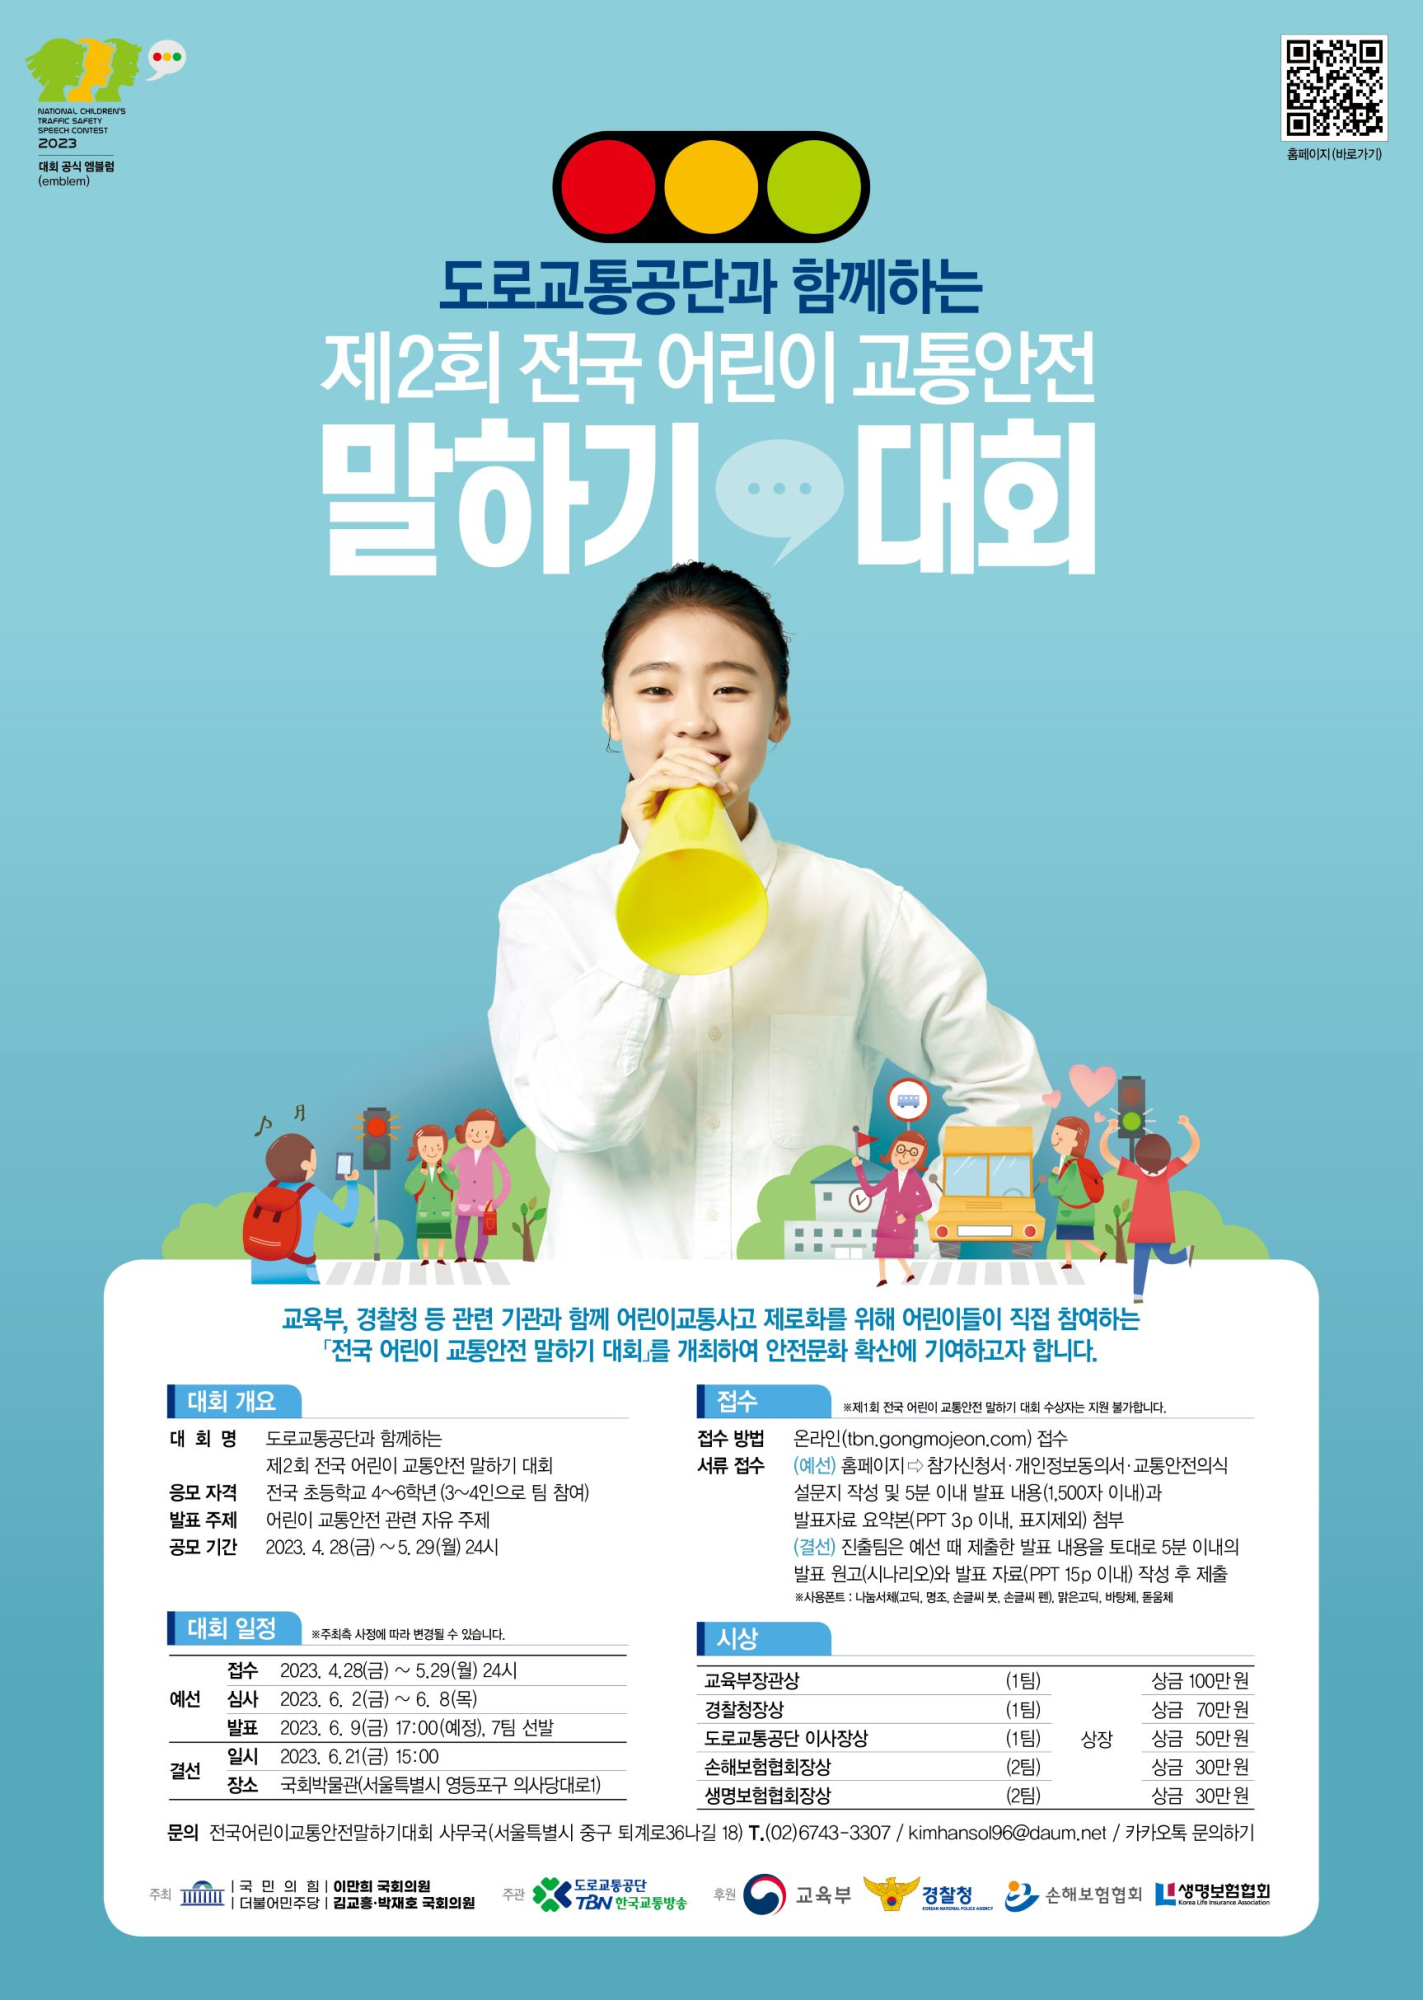 사본 -제2회 전국 어린이 말하기대회(포스터)_v1